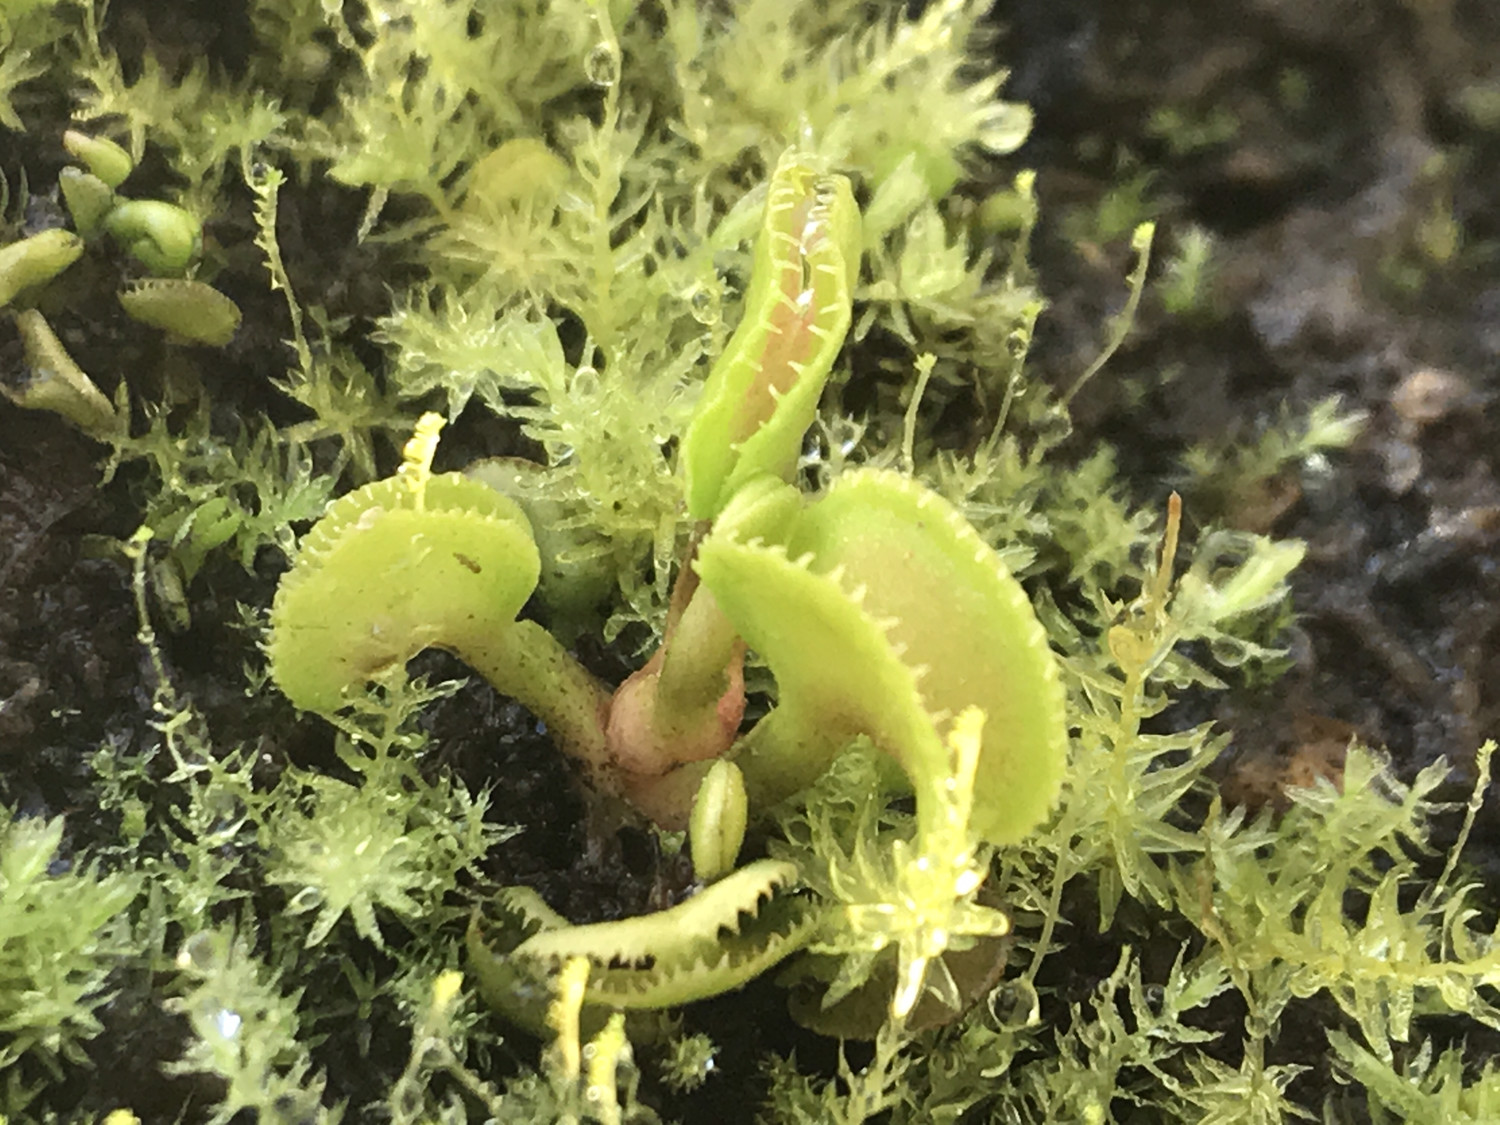 Dionaea muscipula "CUDO" (Pygmy) Venus Flytrap